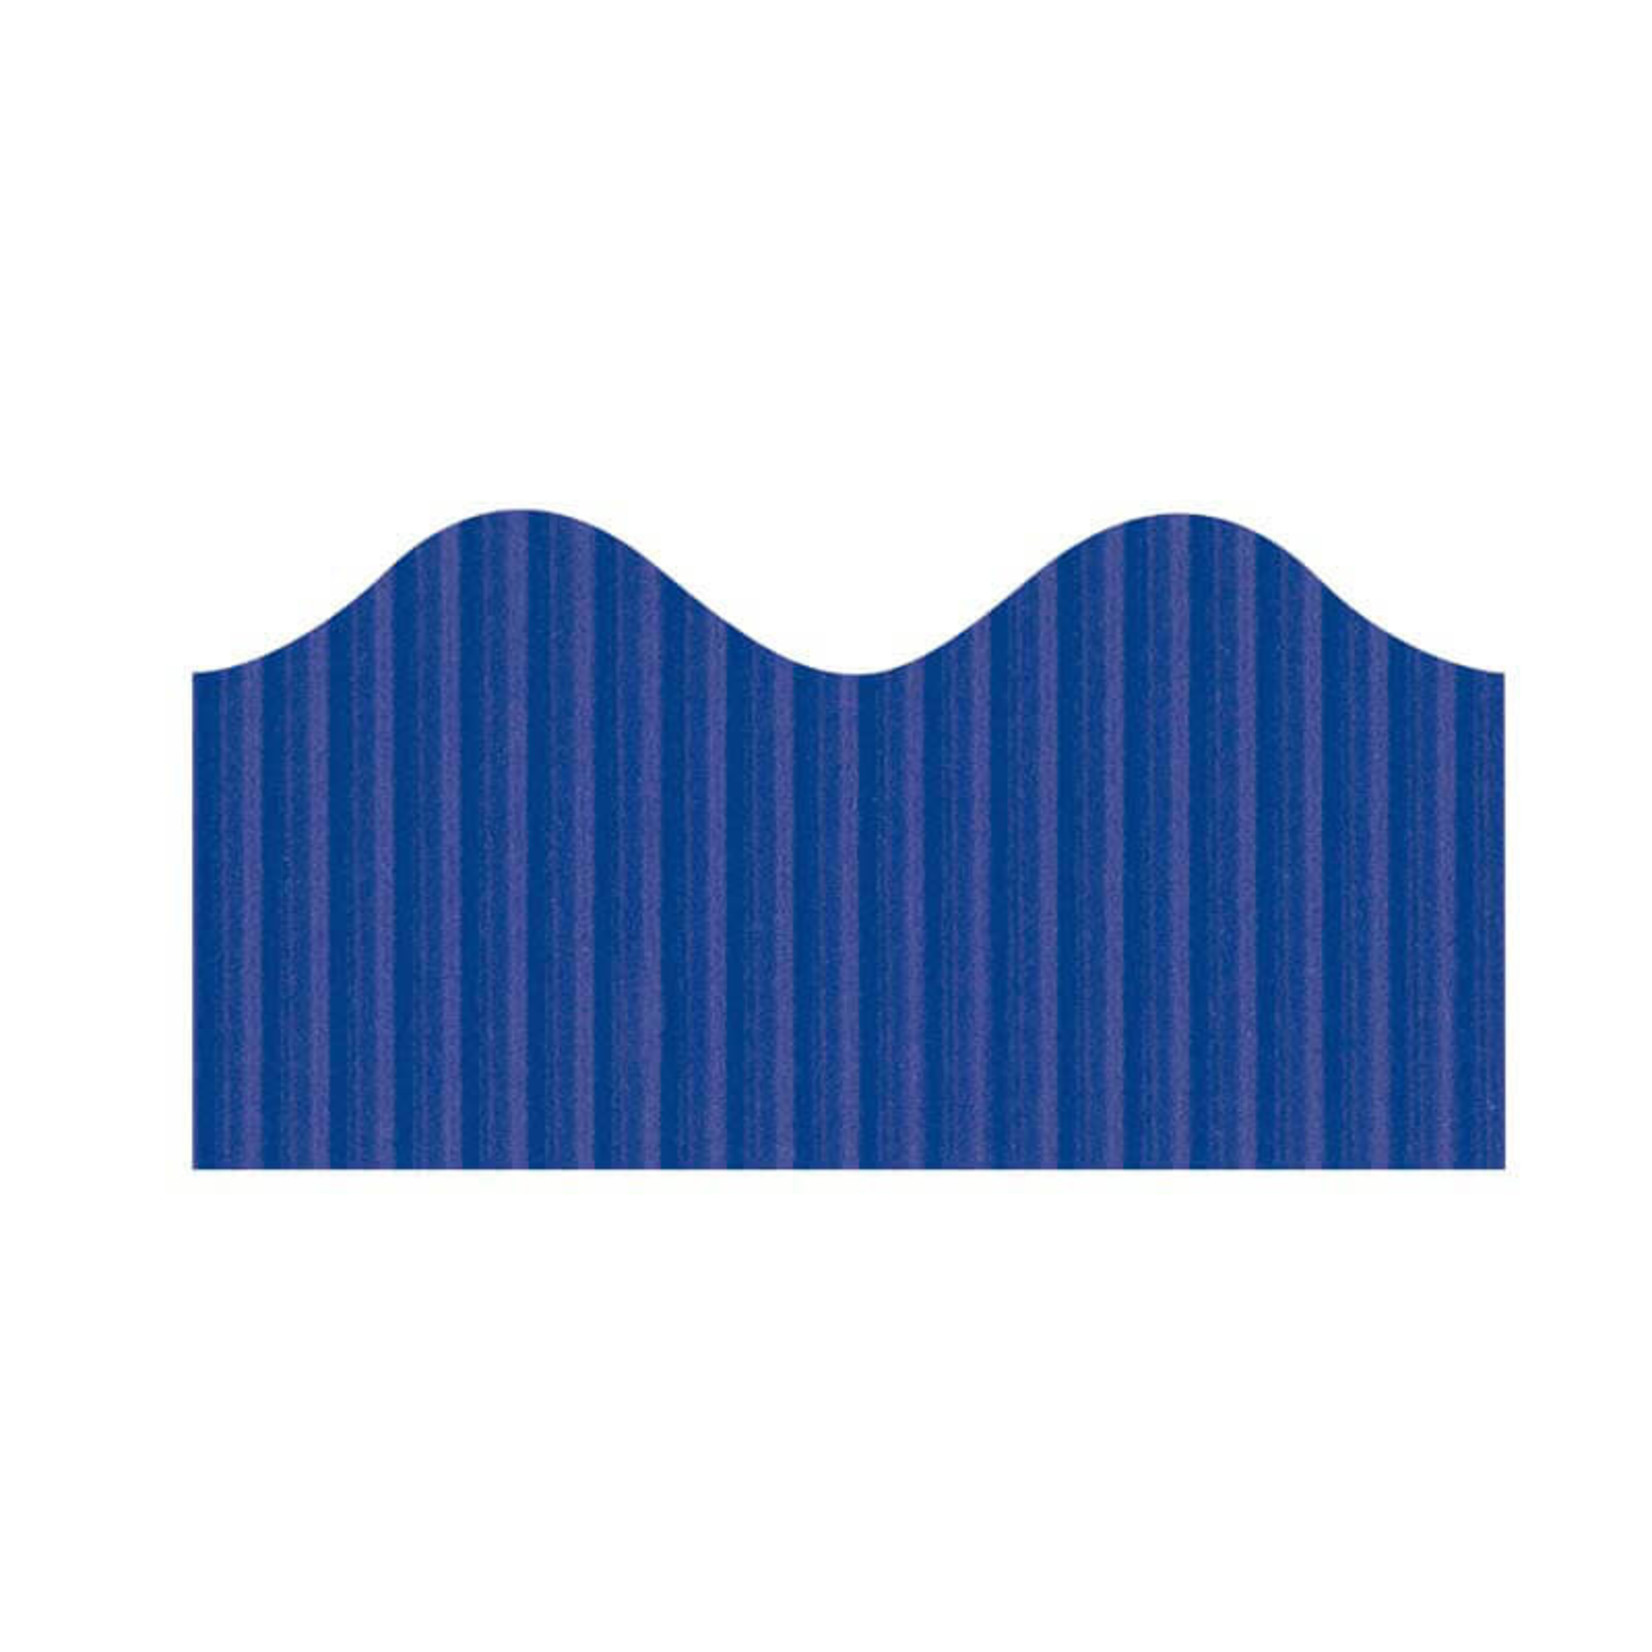 DIXON TICONDEROGA COMPANY Bordette® Decorative Border Royal Blue